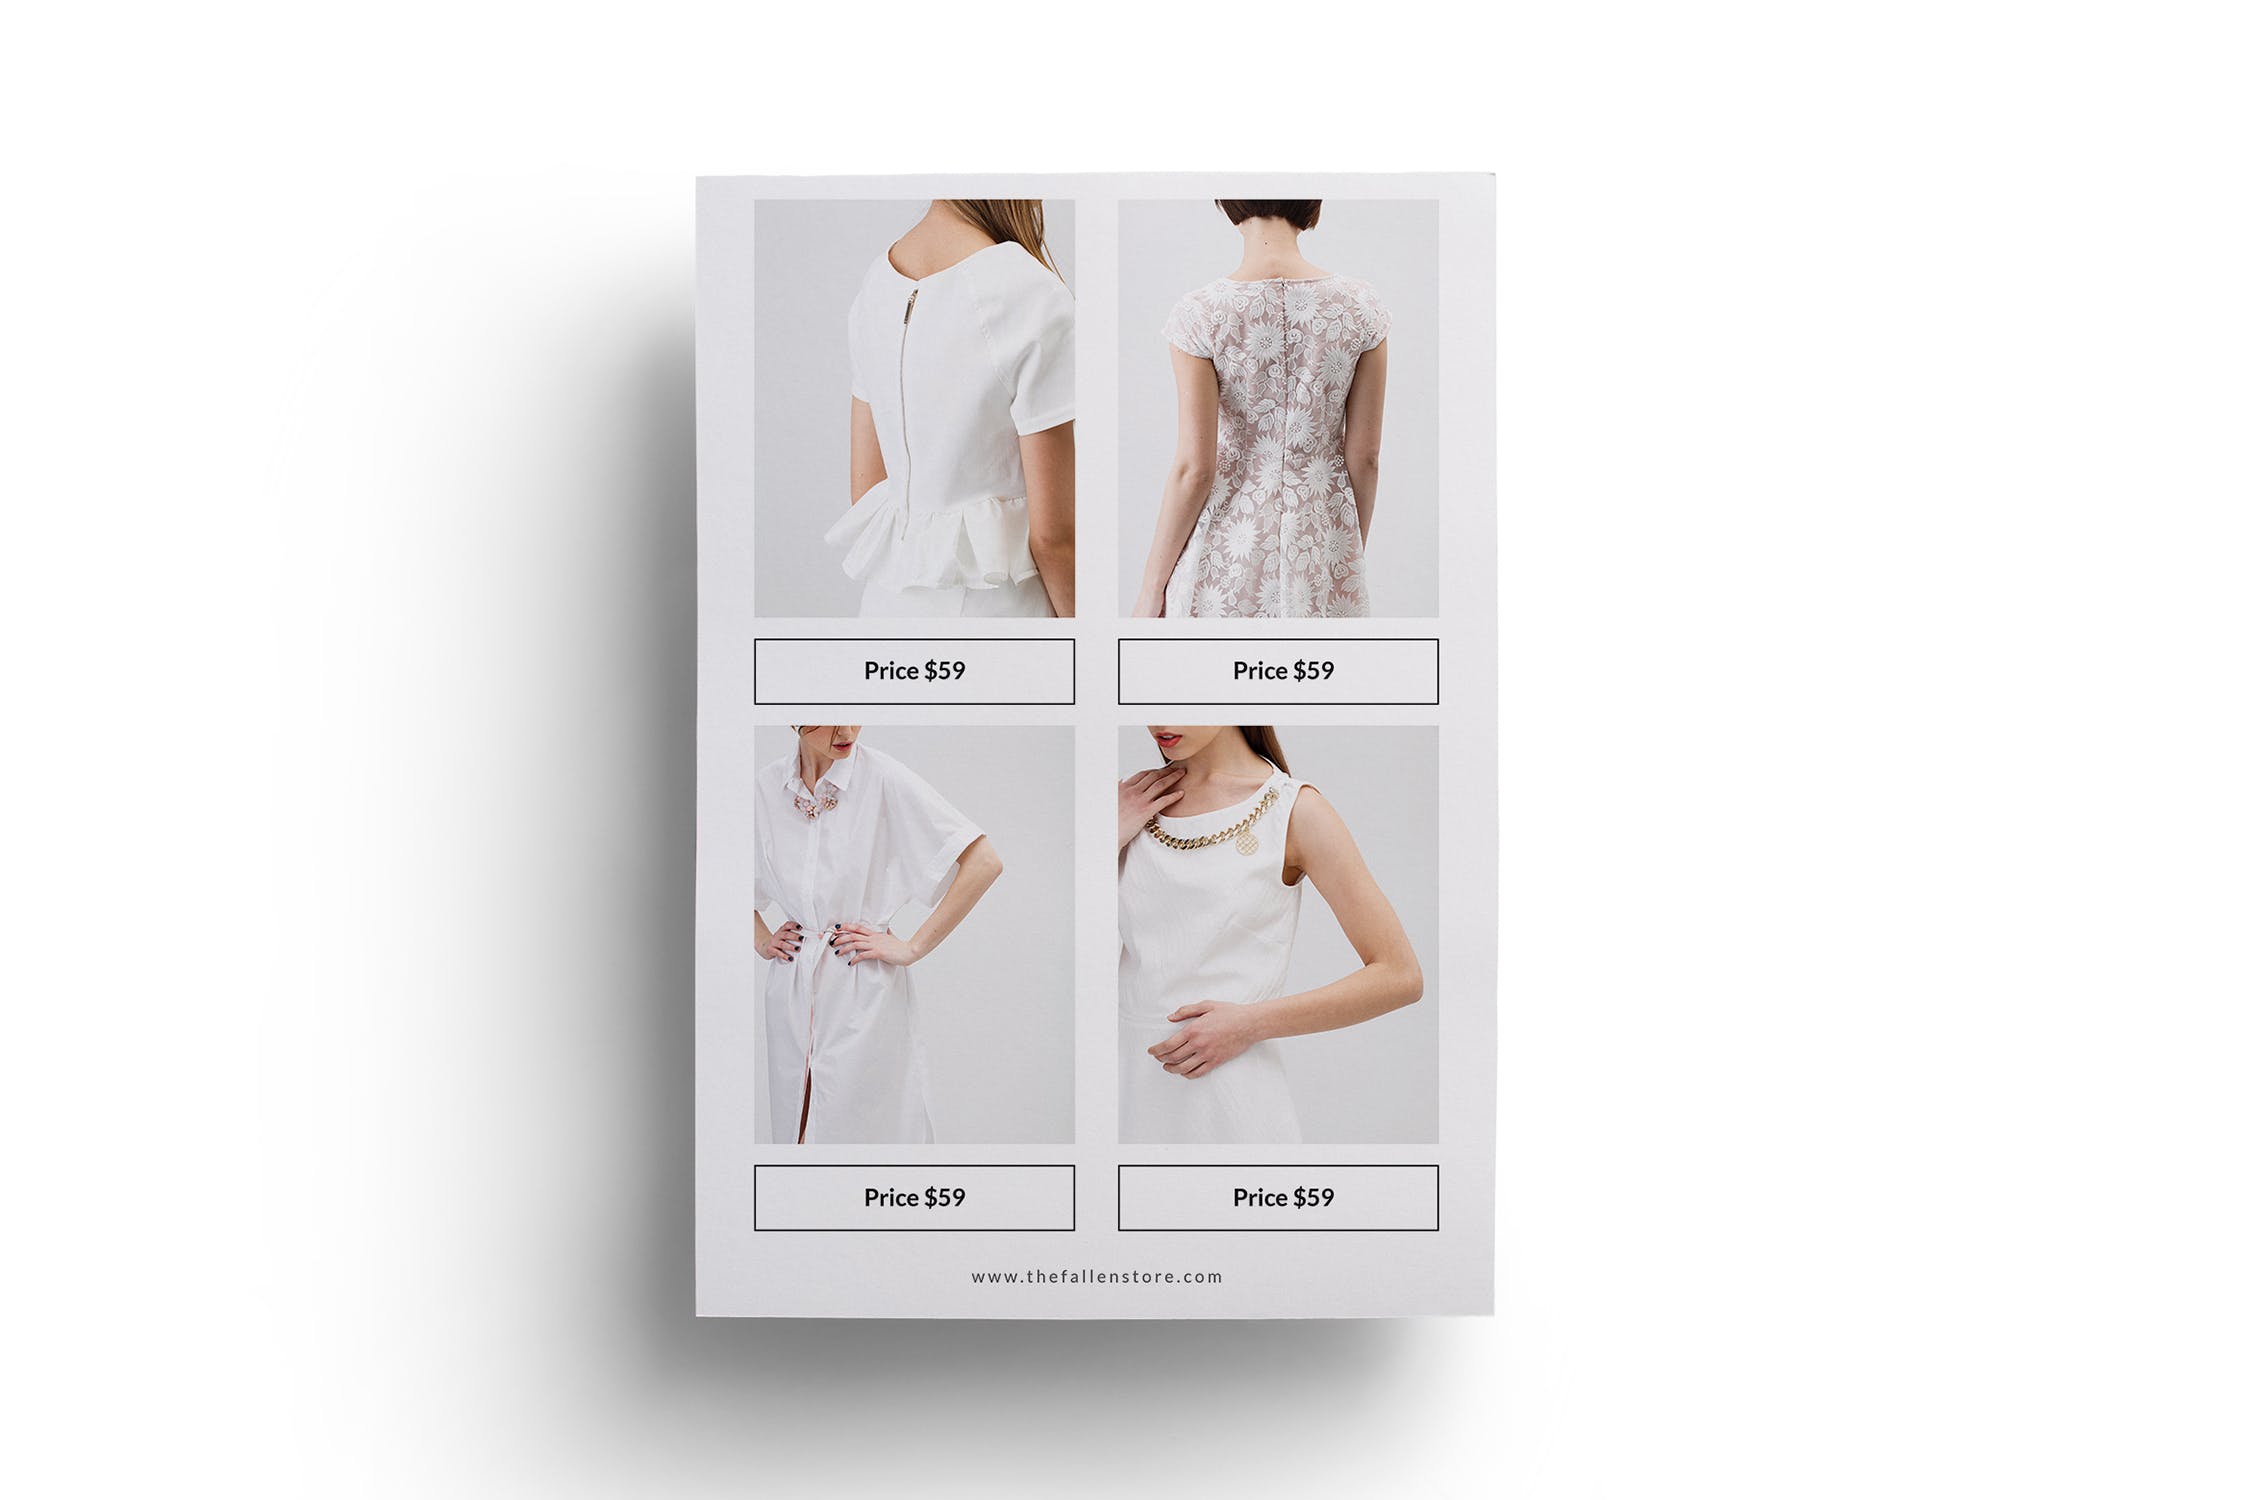 时装品牌&服装店宣传单设计模板 Fashion Flyer插图(2)